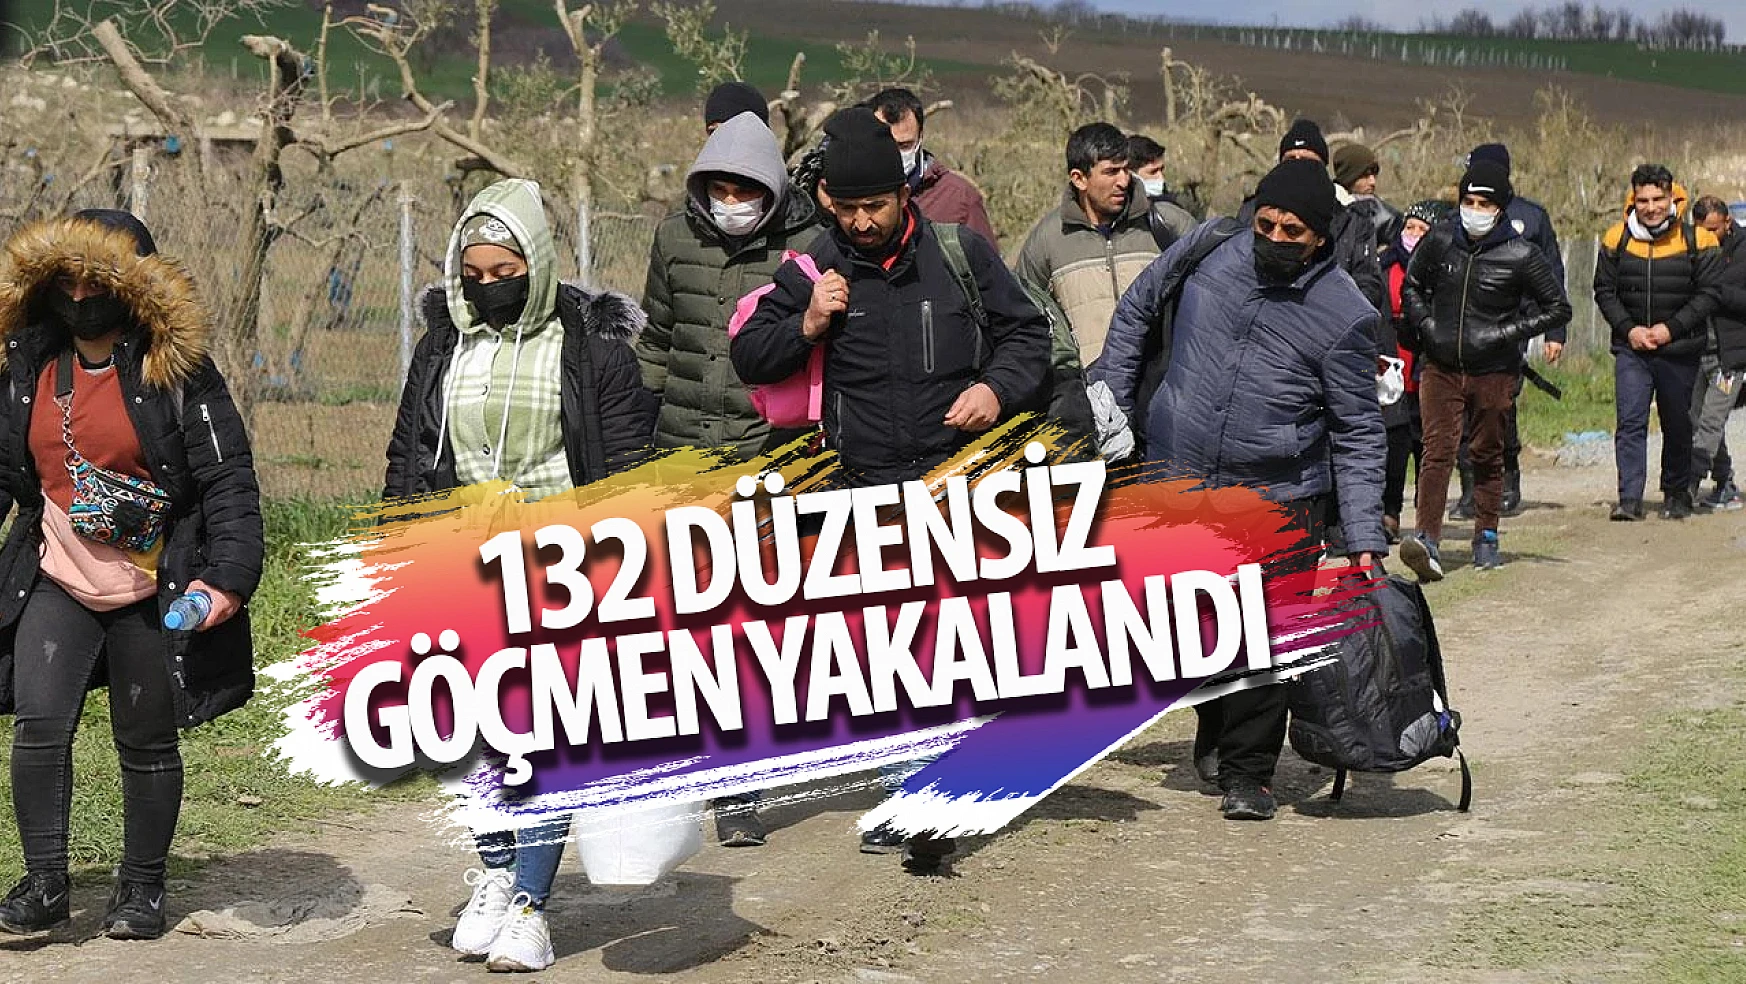 132 düzensiz göçmen yakalandı!